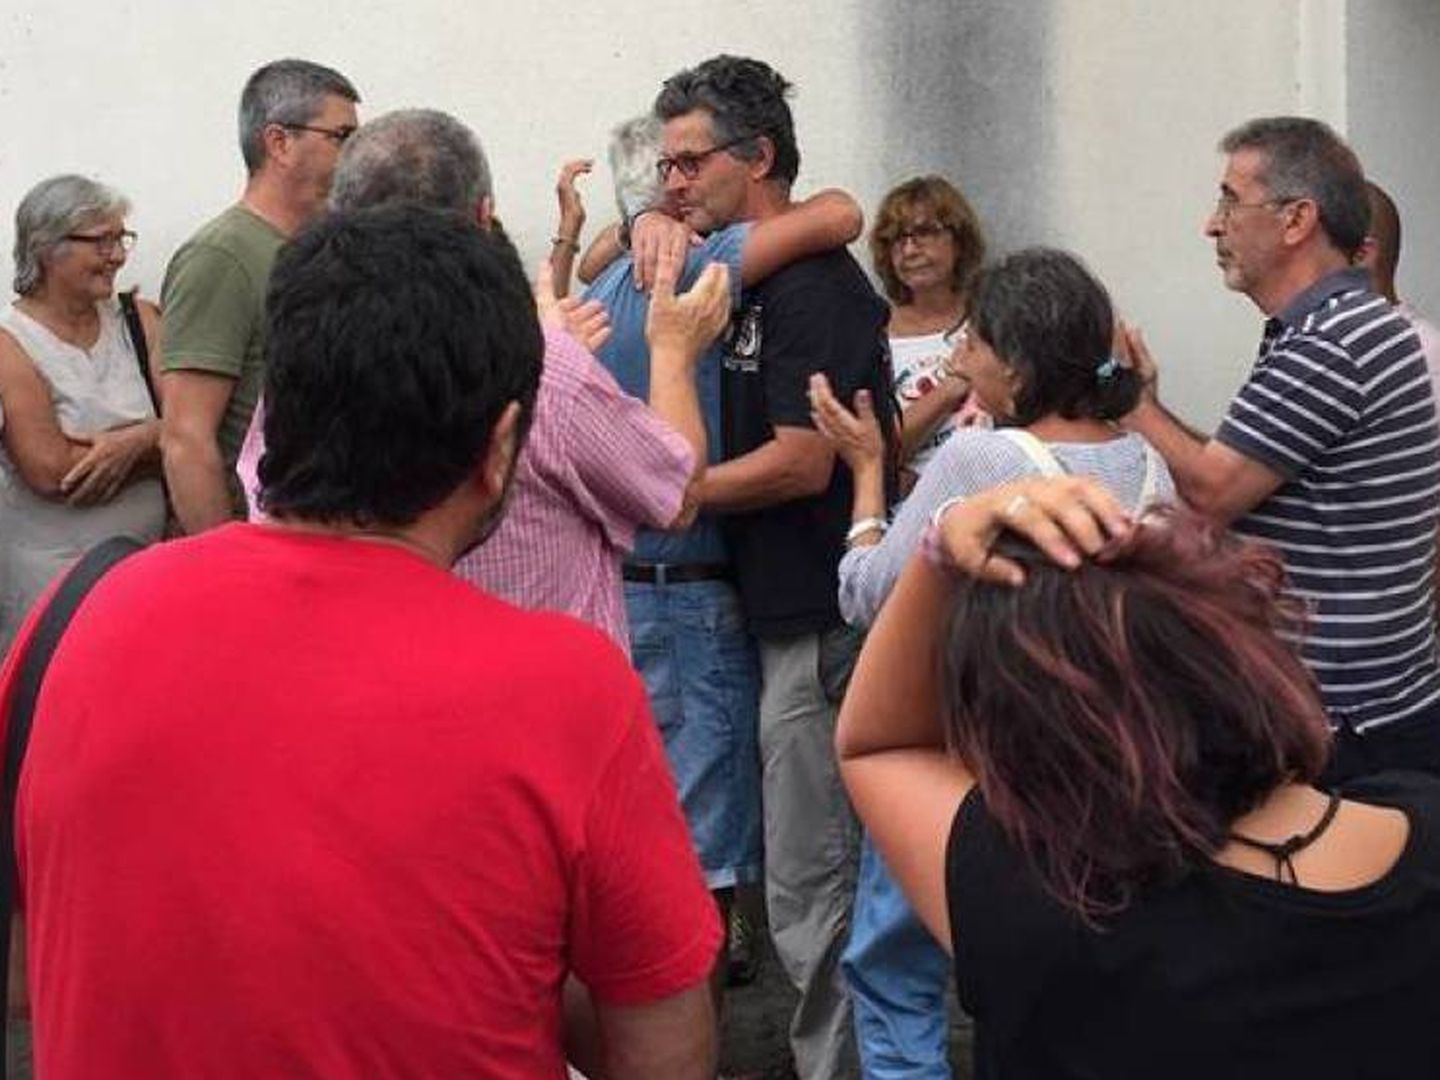 Momento en el que Juan Clavero, siendo abrazado, abandonó los juzgados tras su detención. (Plataforma Ciudadana Sierra de Cádiz)